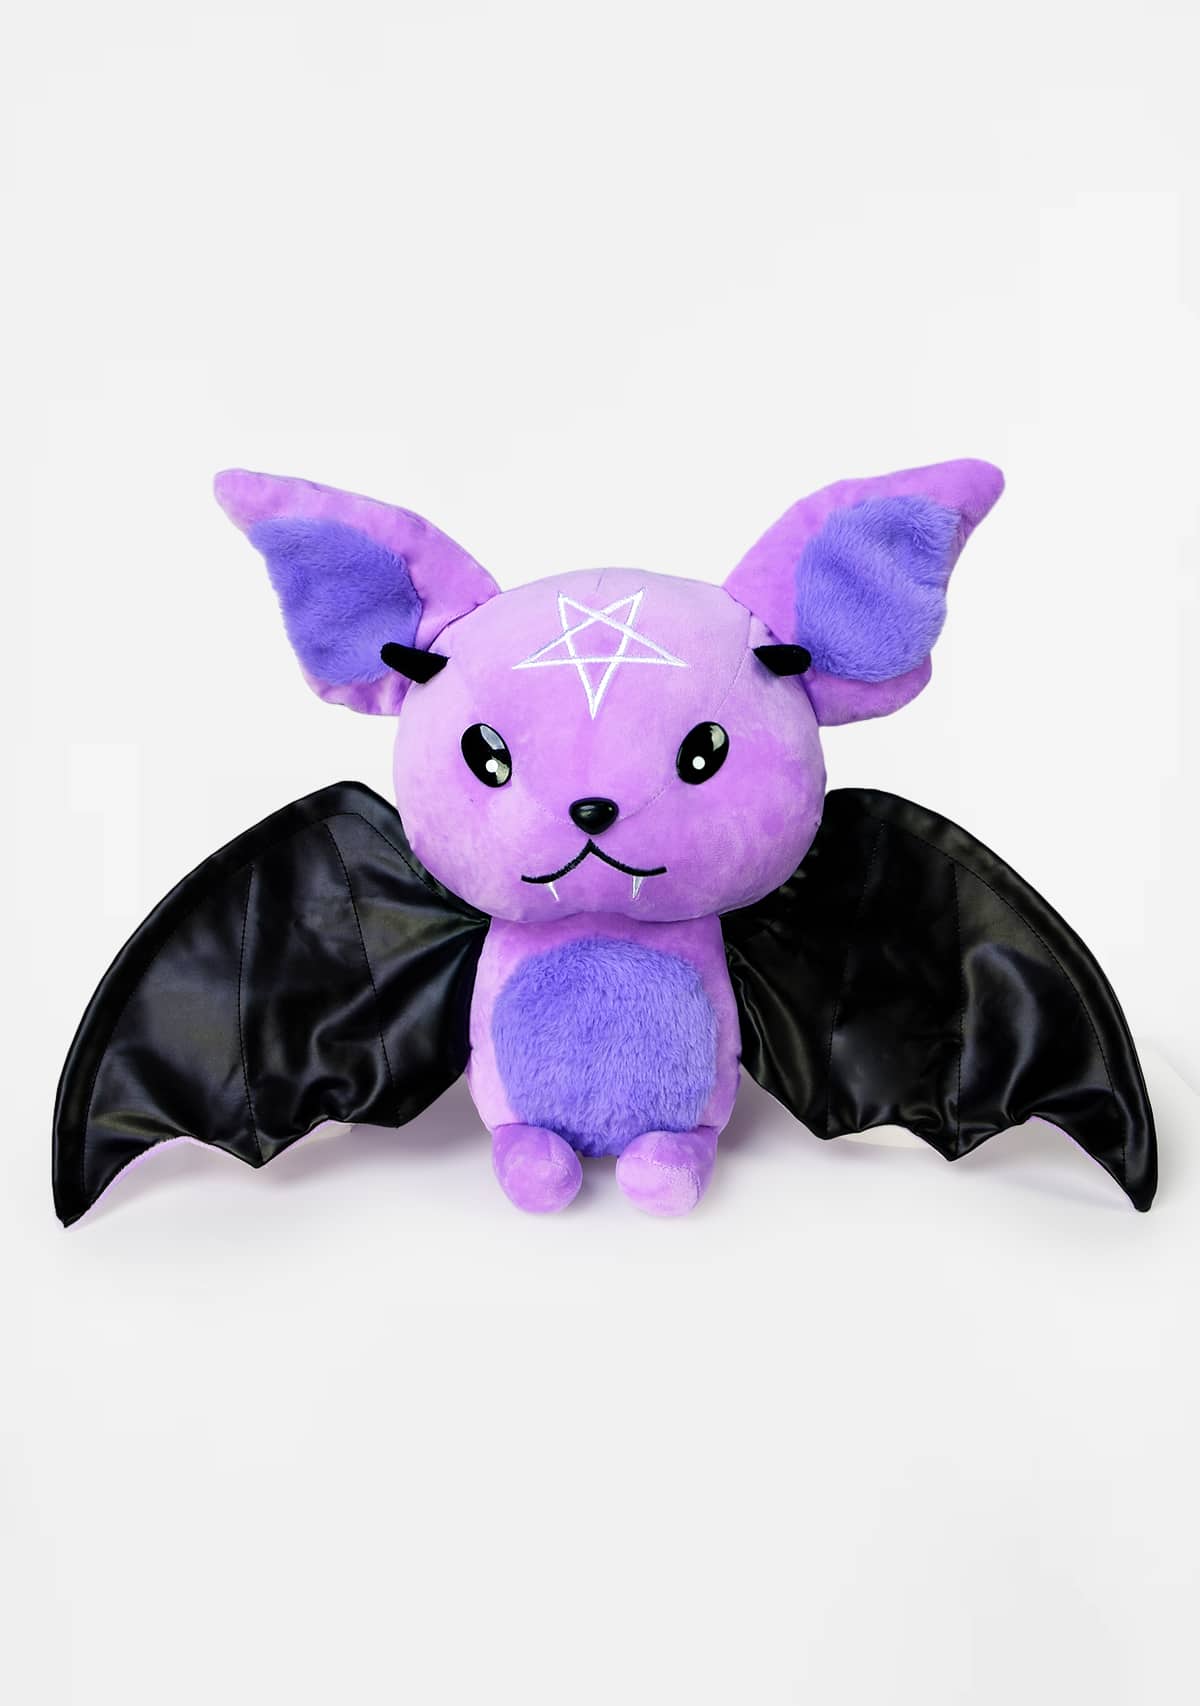 Gothic Emo Cute Bat Plush Toy